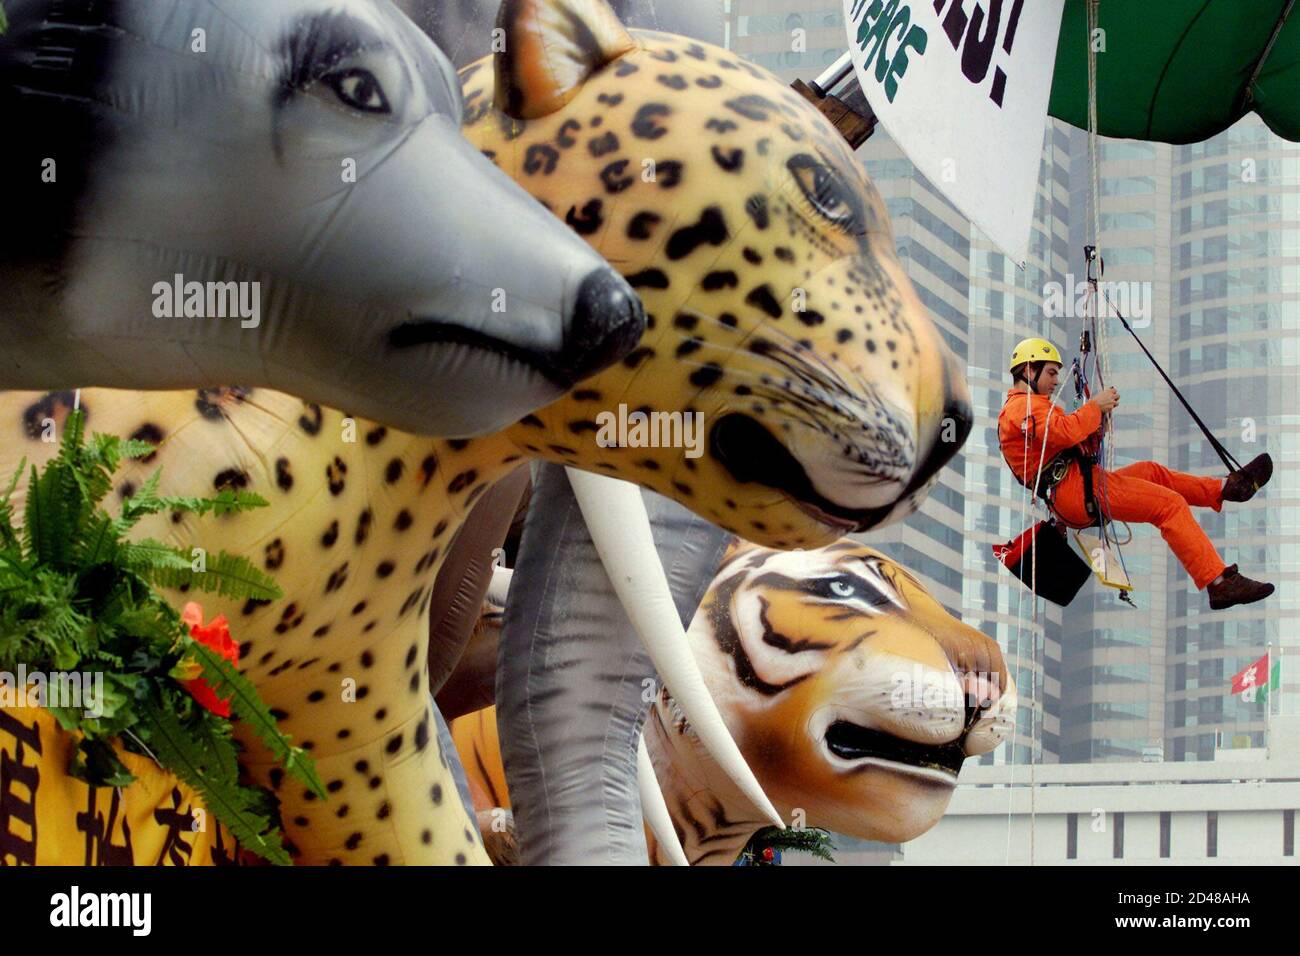 Ein Greenpeace-Aktivist hängt ein Protestbanner über riesigen aufblasbaren  Tiermodellen, darunter Wolf, jaguar, Elefant und Tiger, in Hongkong am 15.  Januar 2002 auf. Die Umweltschutzgruppe organisierte eine Parade mit  Modellen der "bedeutenden sieben"